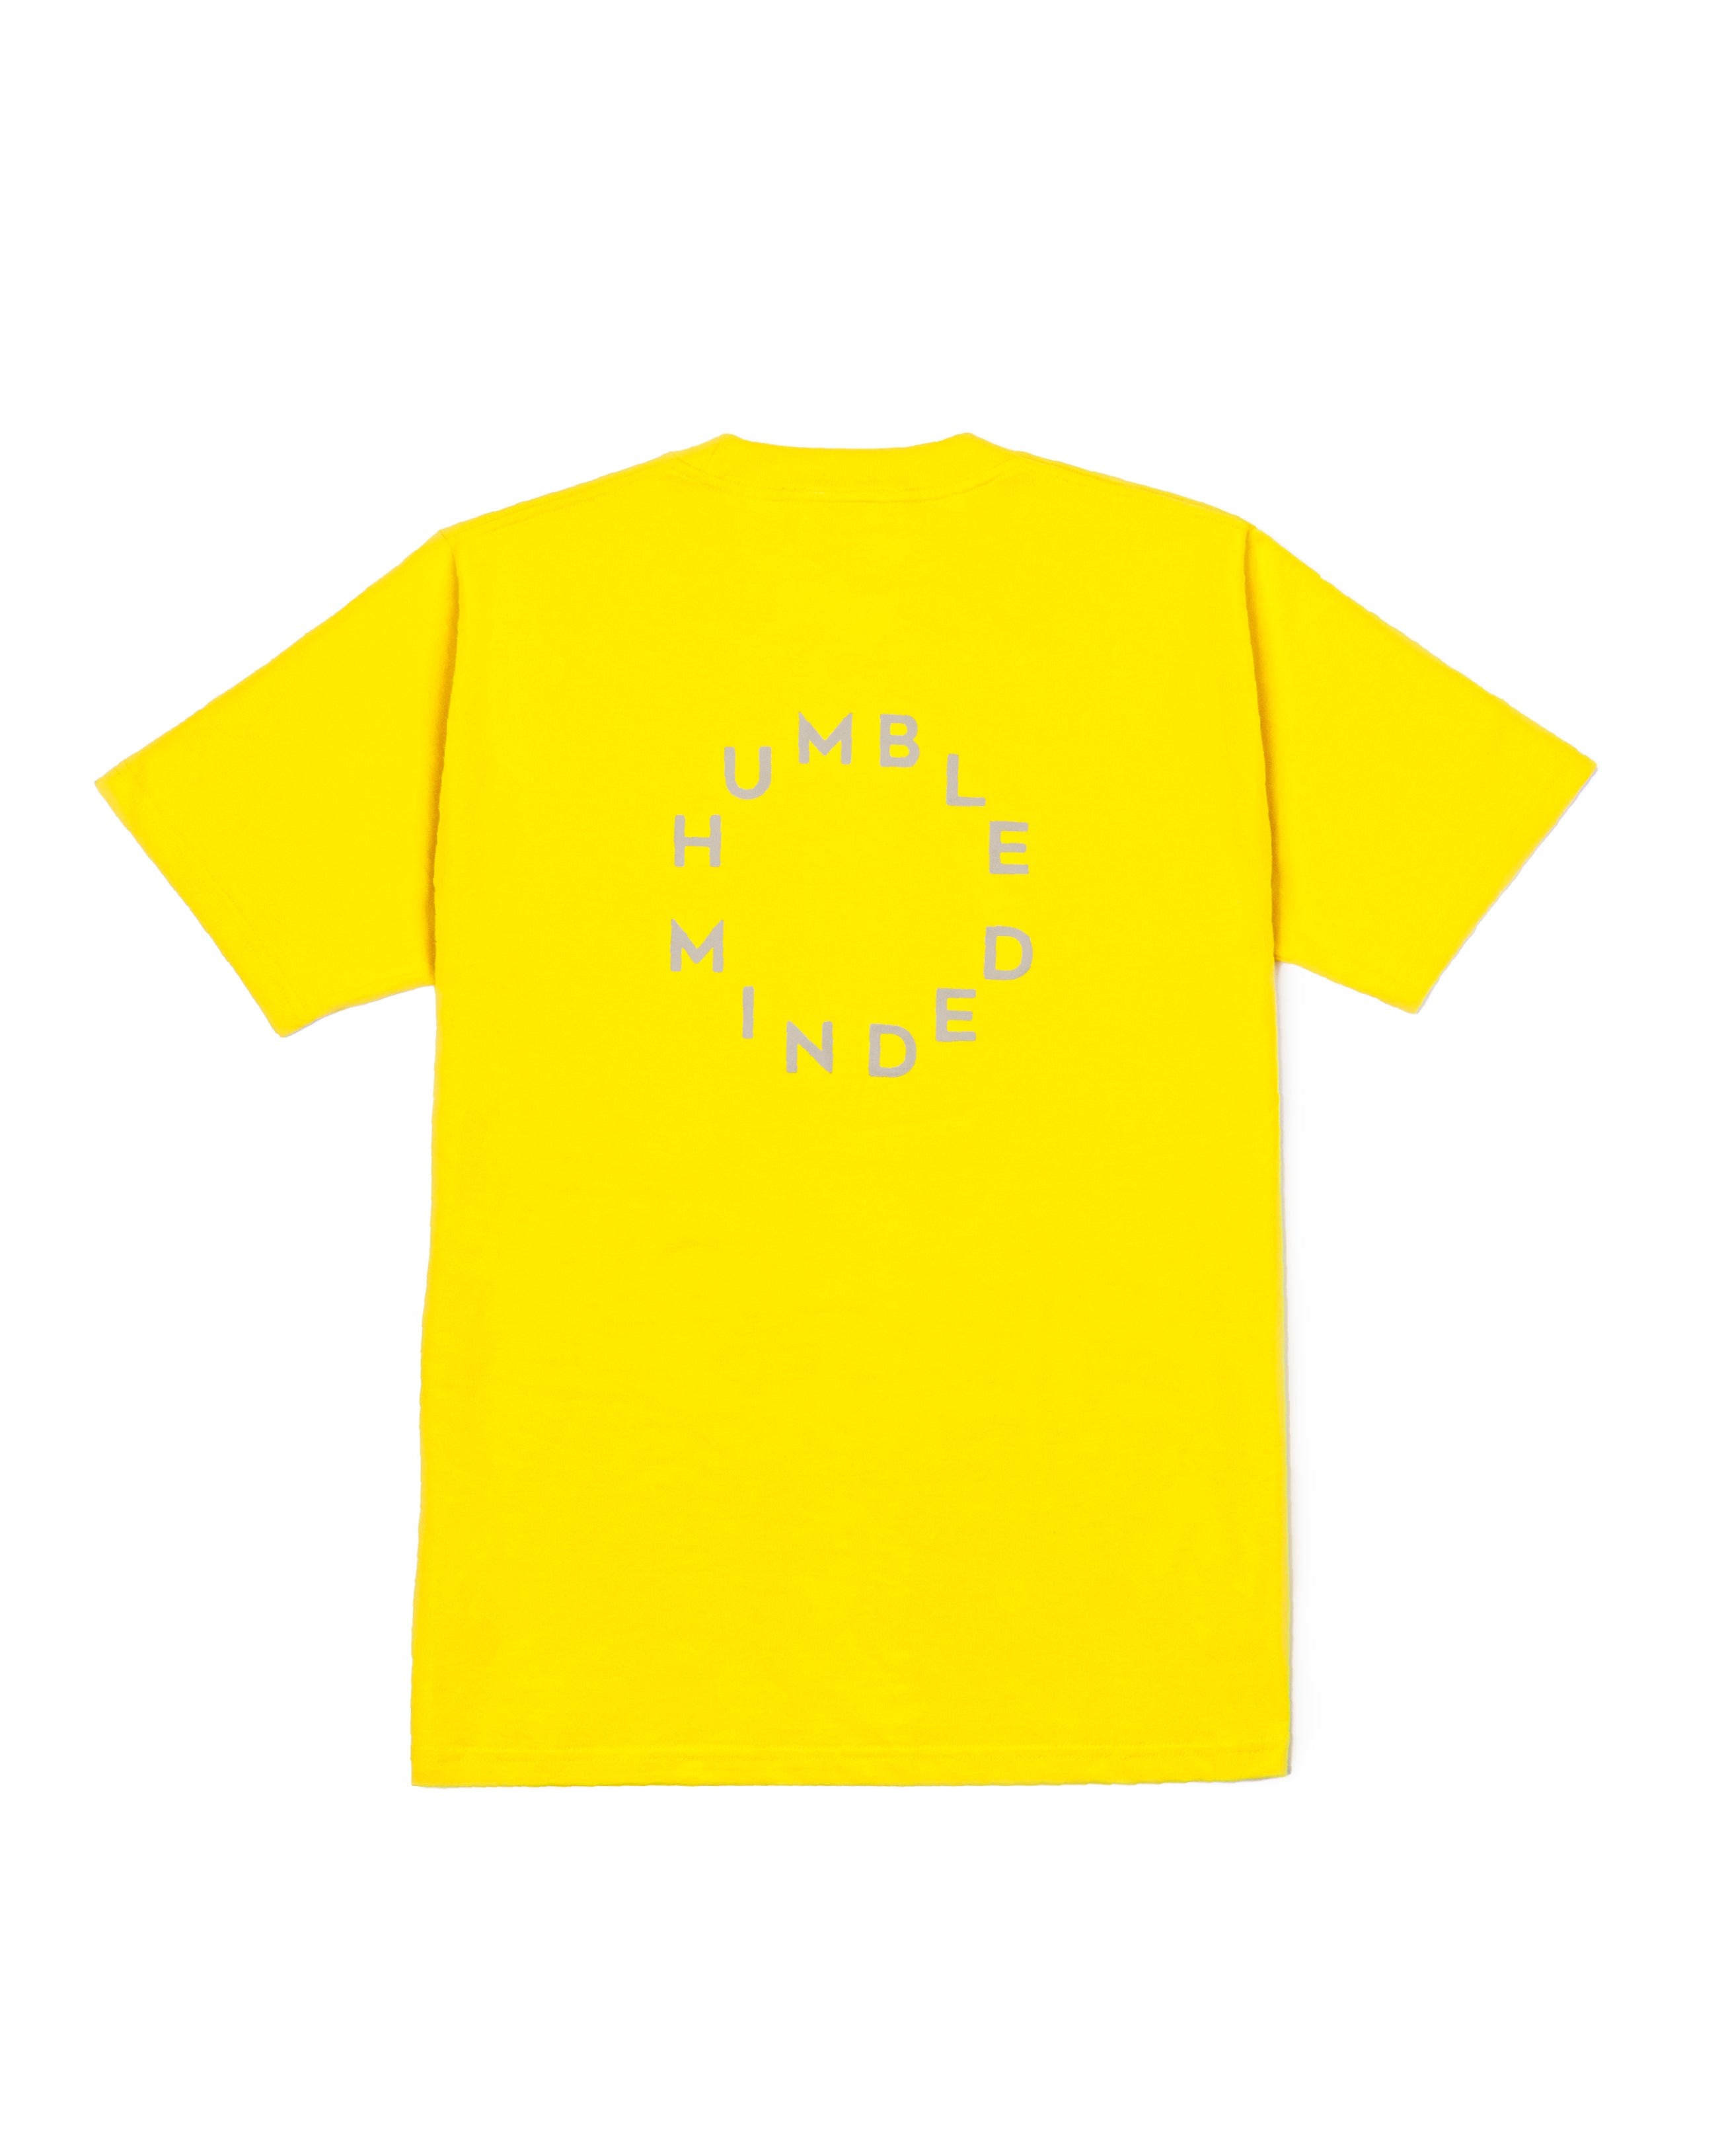 The Round Logo Print T-Shirt Yellow